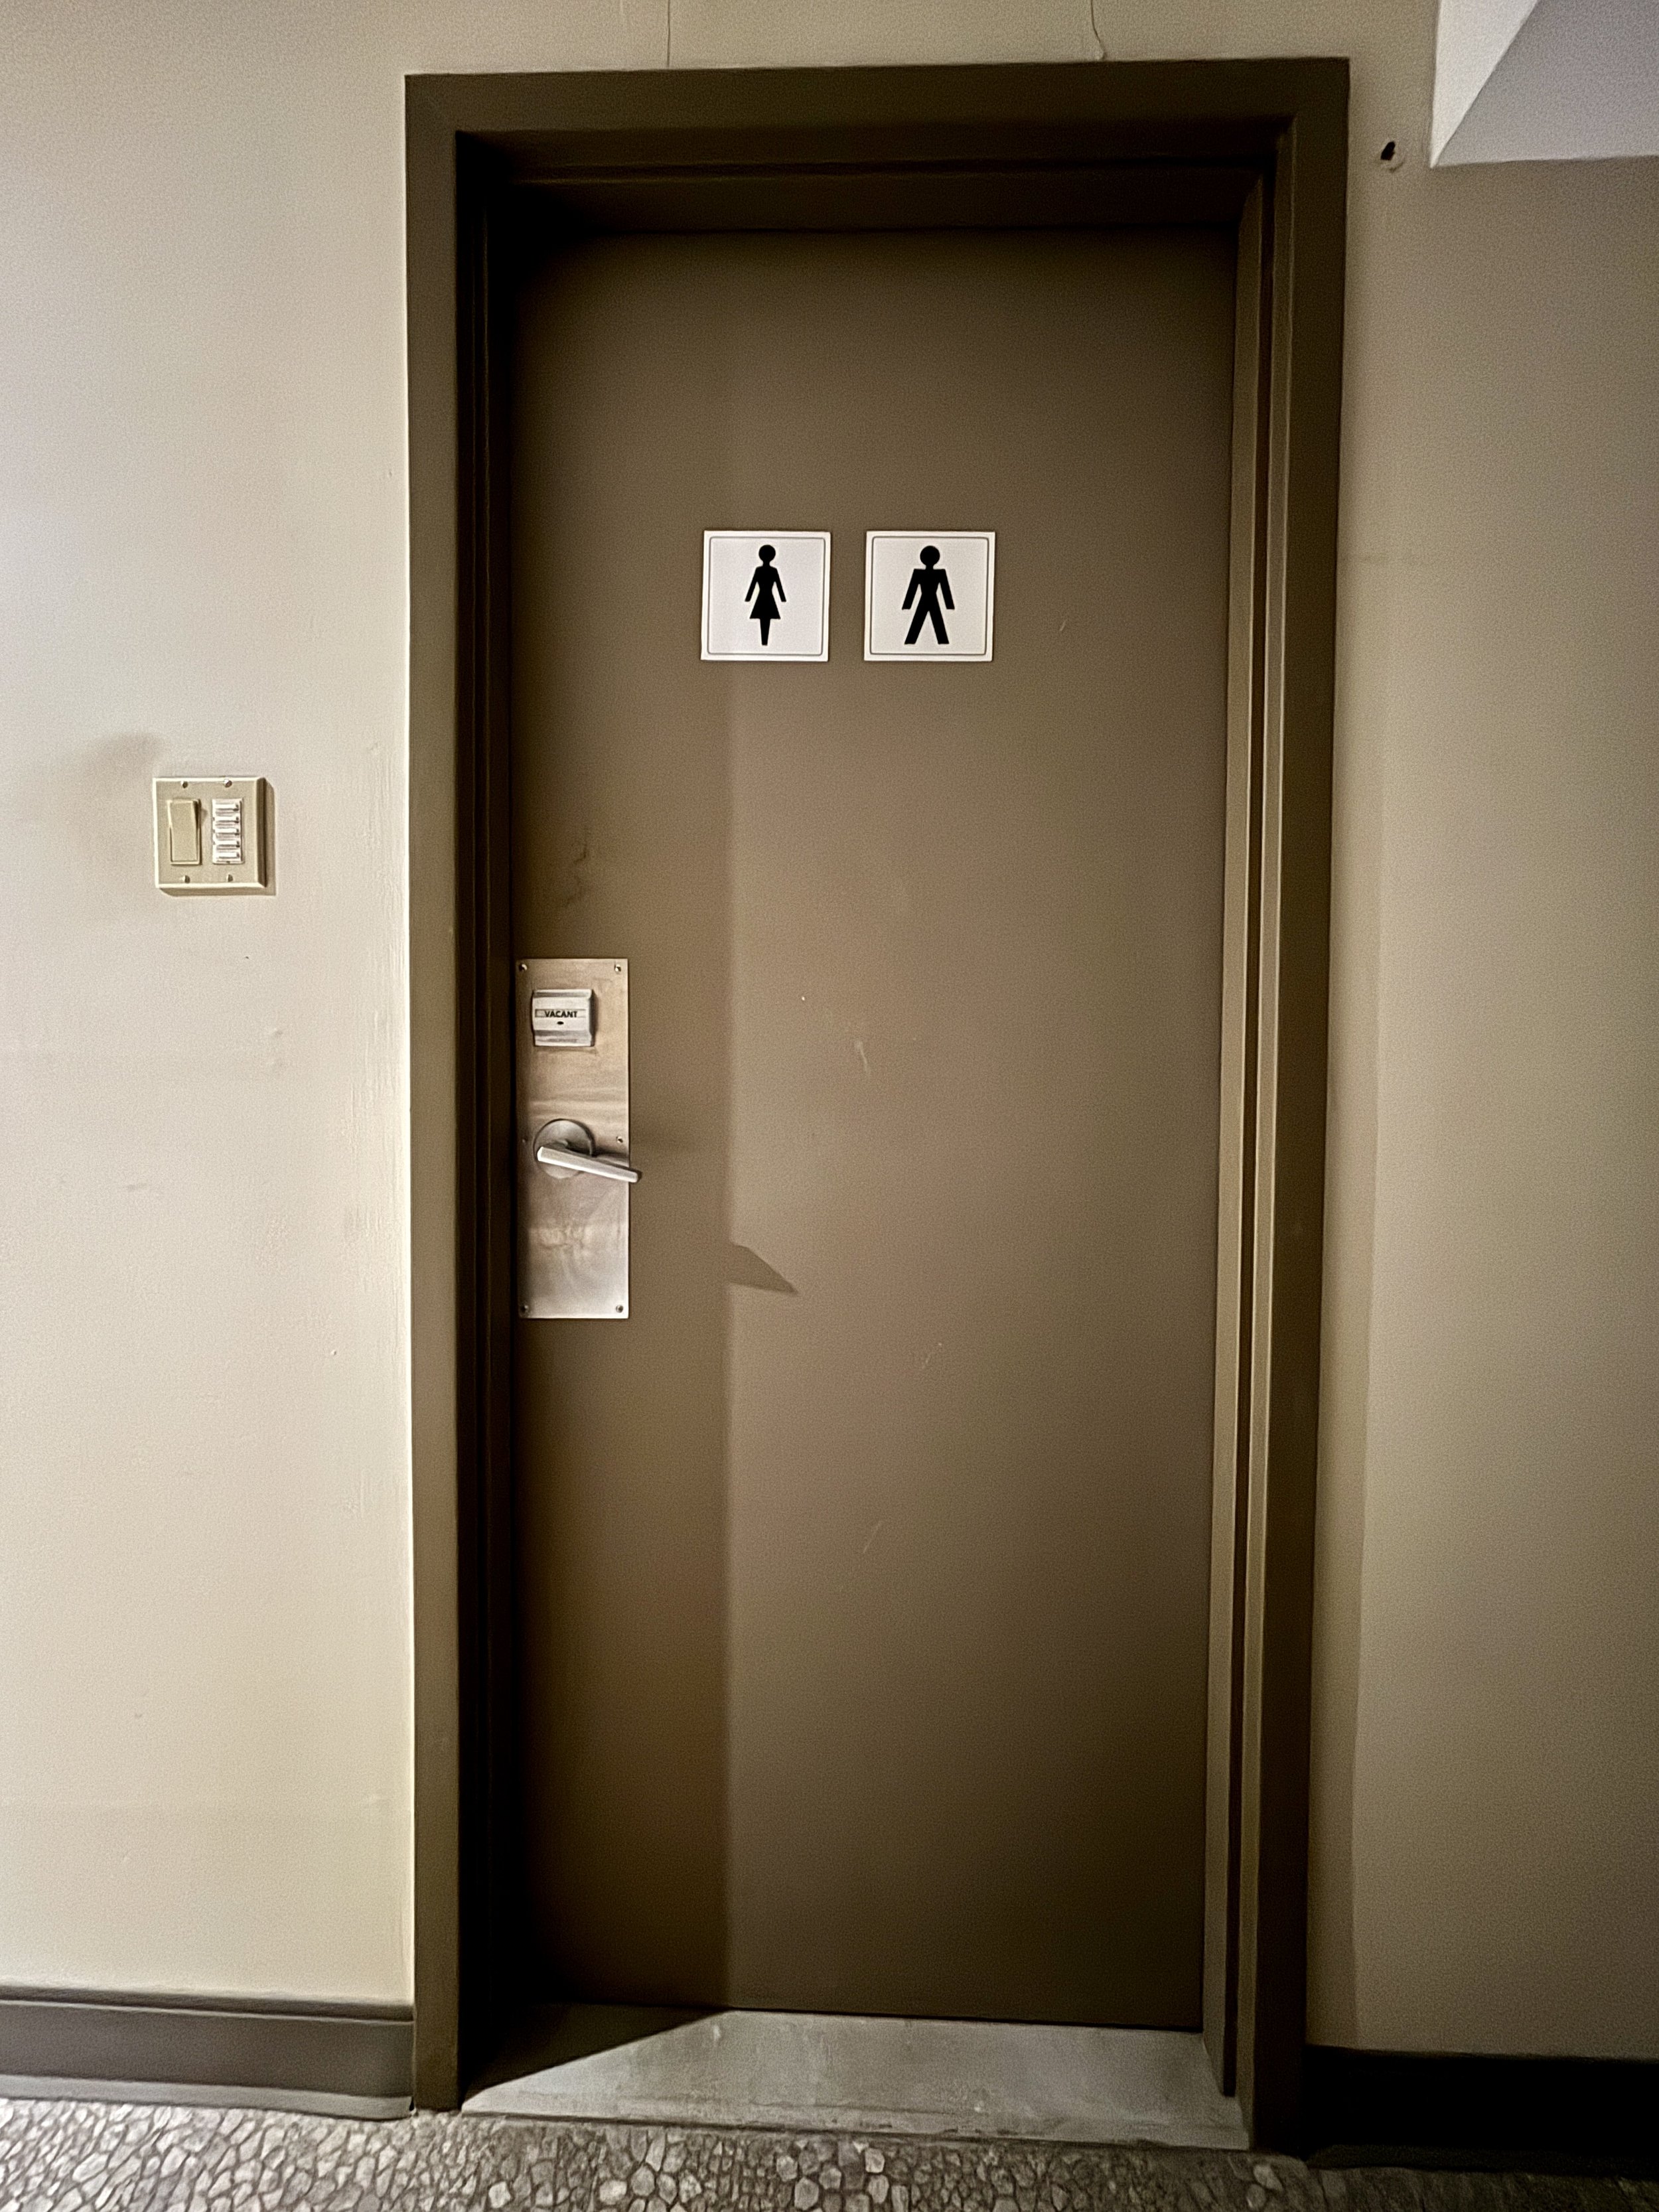  Bathroom Door with 2 Cubicles - 1